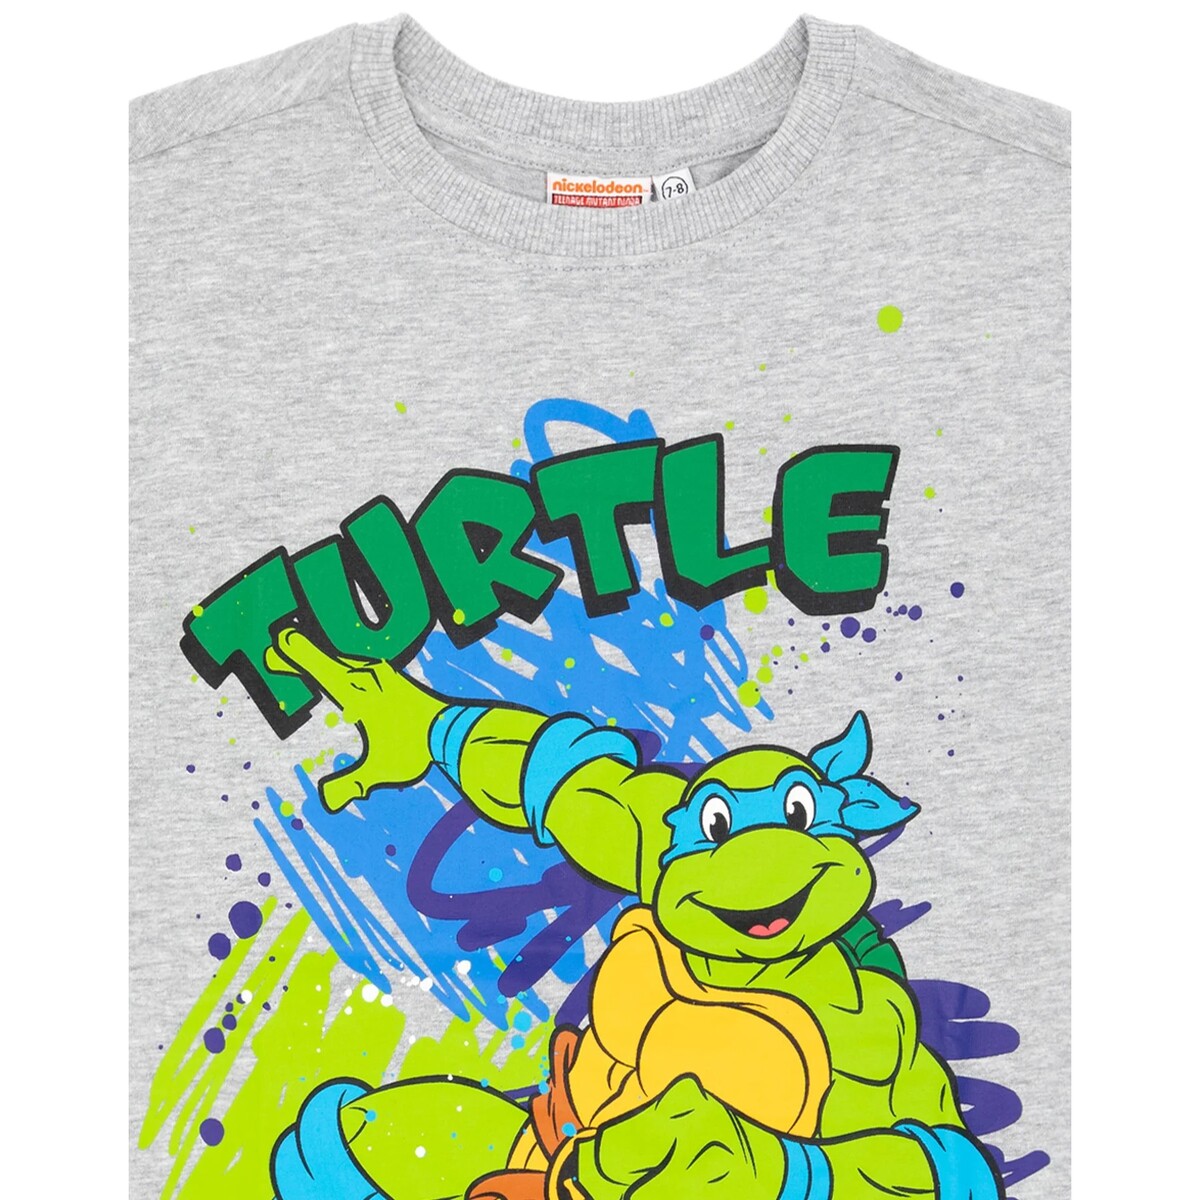 (ミュータント タートルズ) Teenage Mutant Ninja Turtles オフィシャル商品 キッズ・子供 Tシャツ 半袖 トップス カットソー (2枚組) 